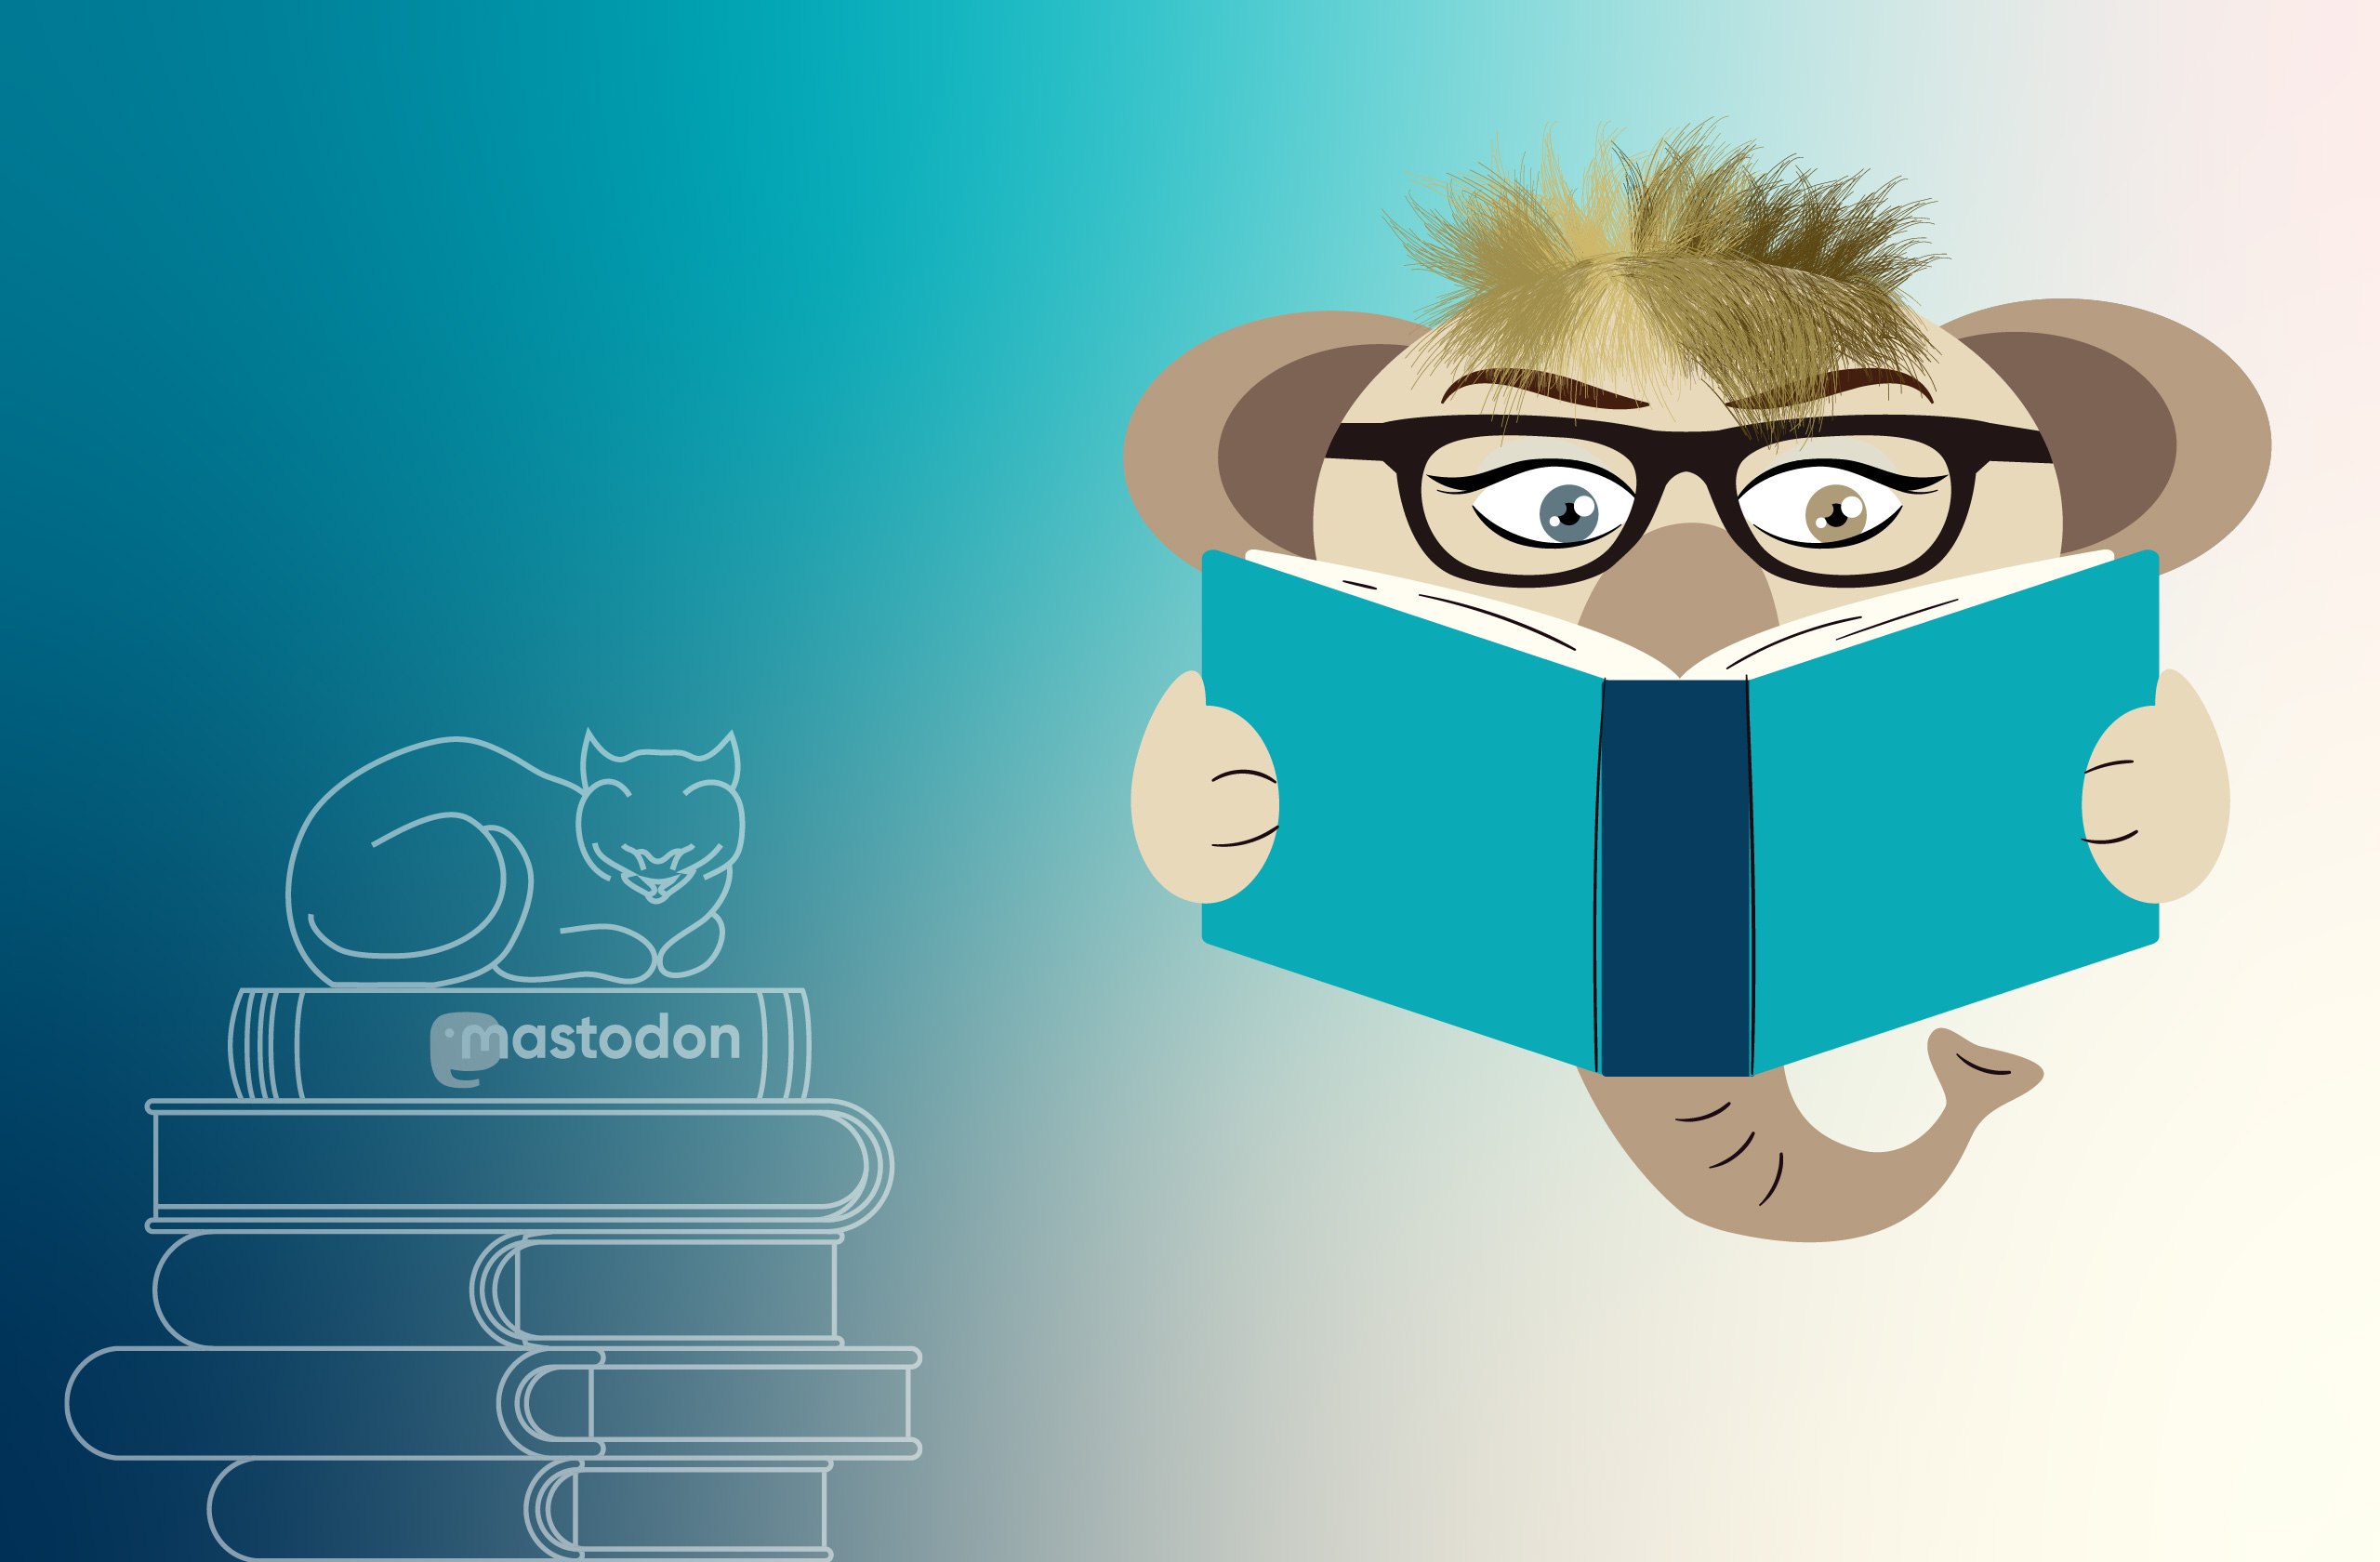 Key Visual links: Katze auf Bücherstapel mit Mastodon-Logo, rechts: Mastodon mit Buch und Brille